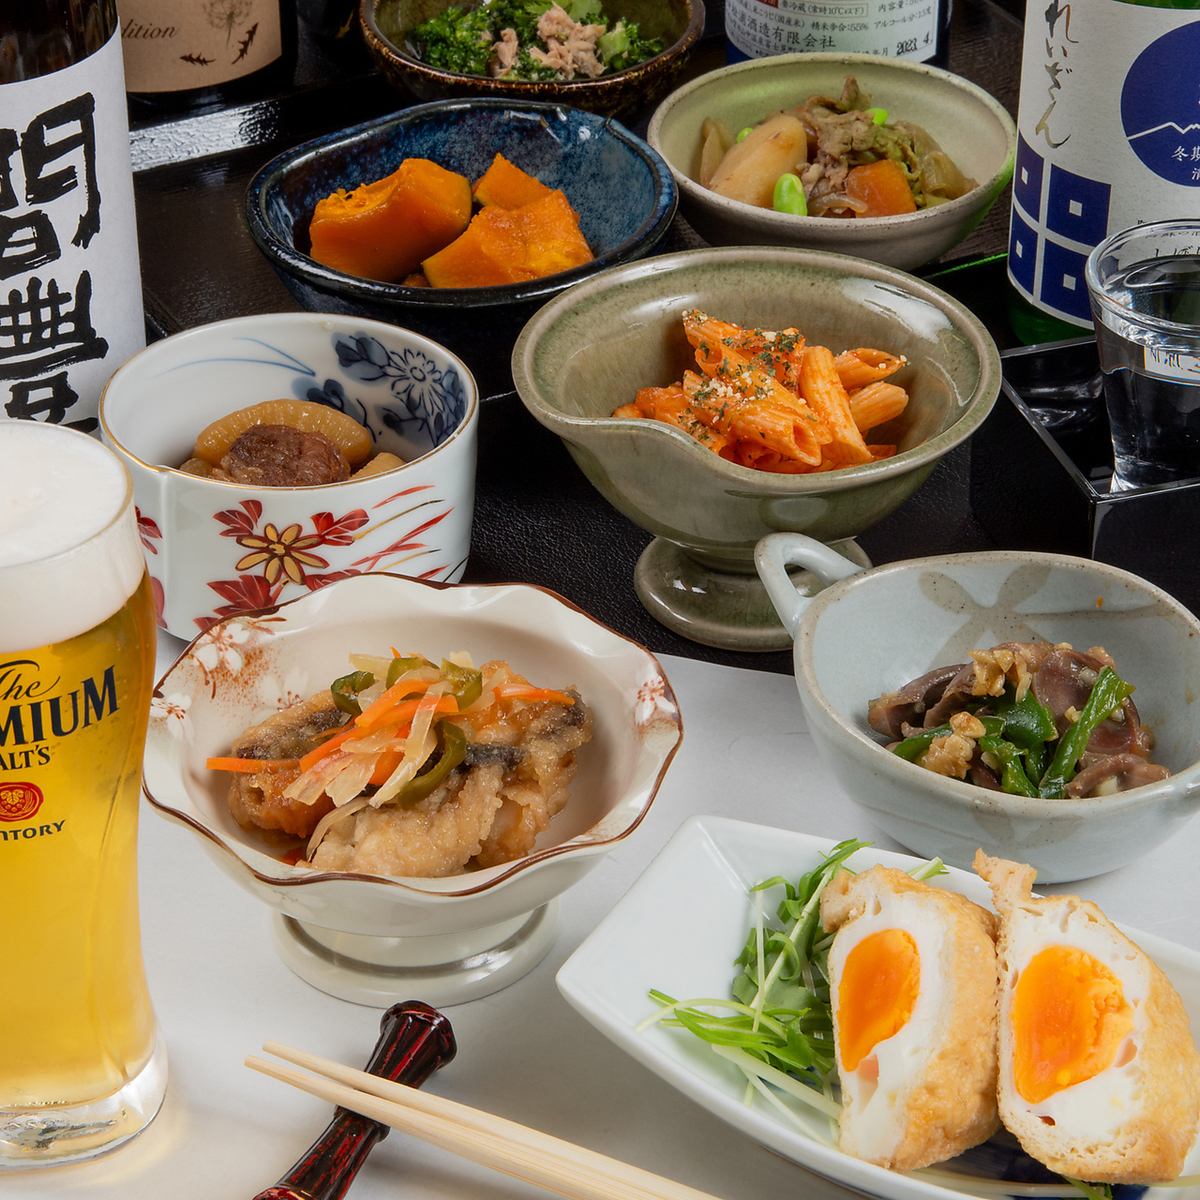 享受温暖的九州家常菜和与各种当地酒和日本酒搭配的家常菜。